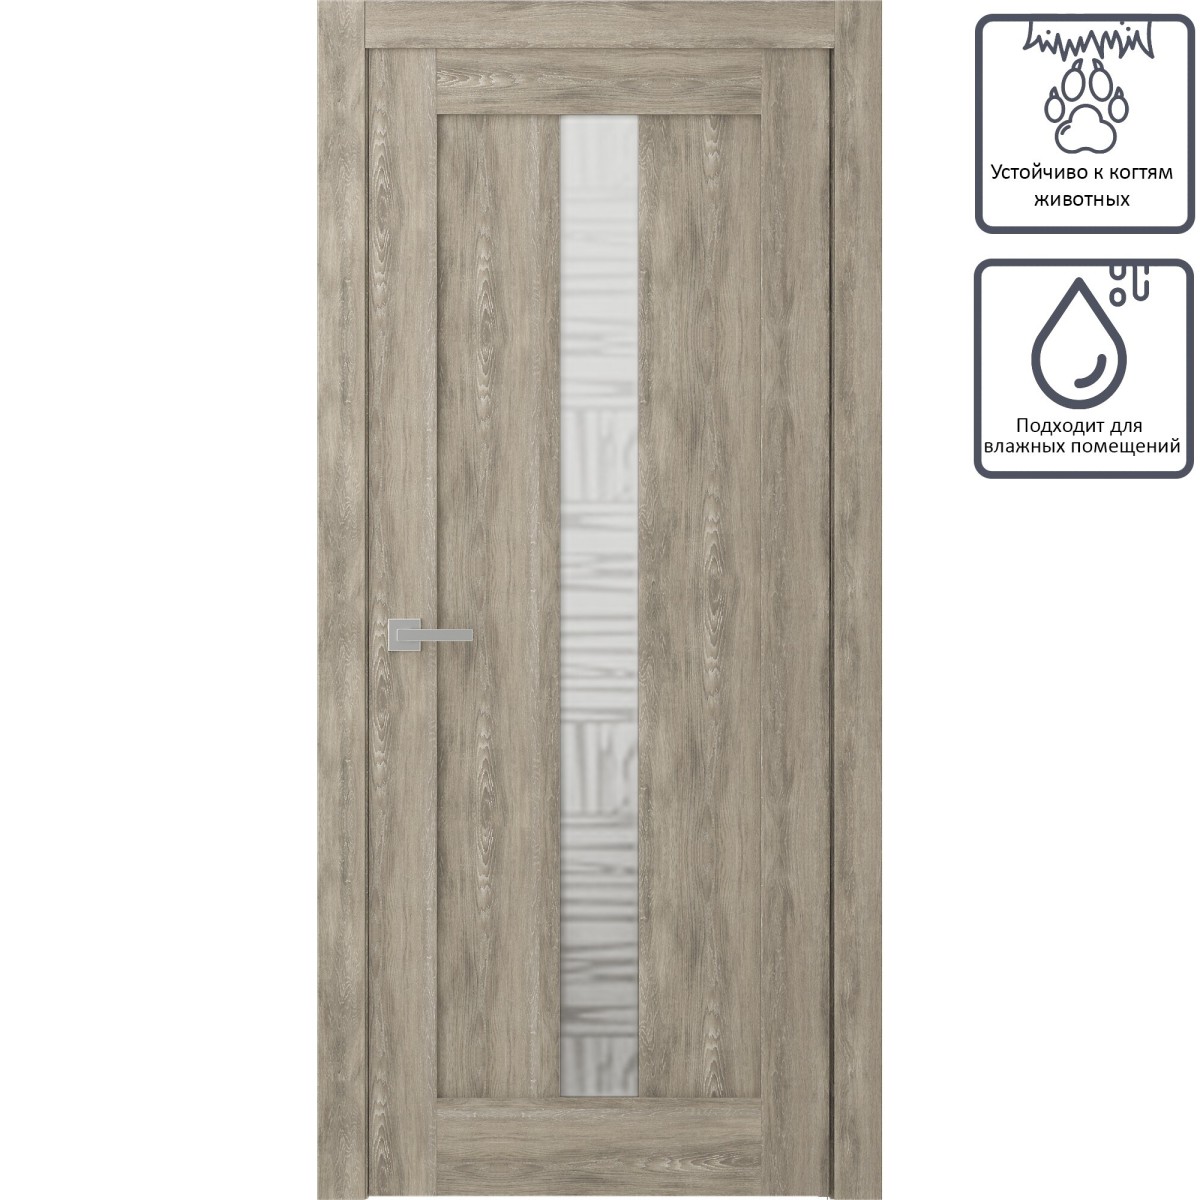 Дверь межкомнатная остеклённая Челси 60x200 см, экошпон, цвет дуб медовый